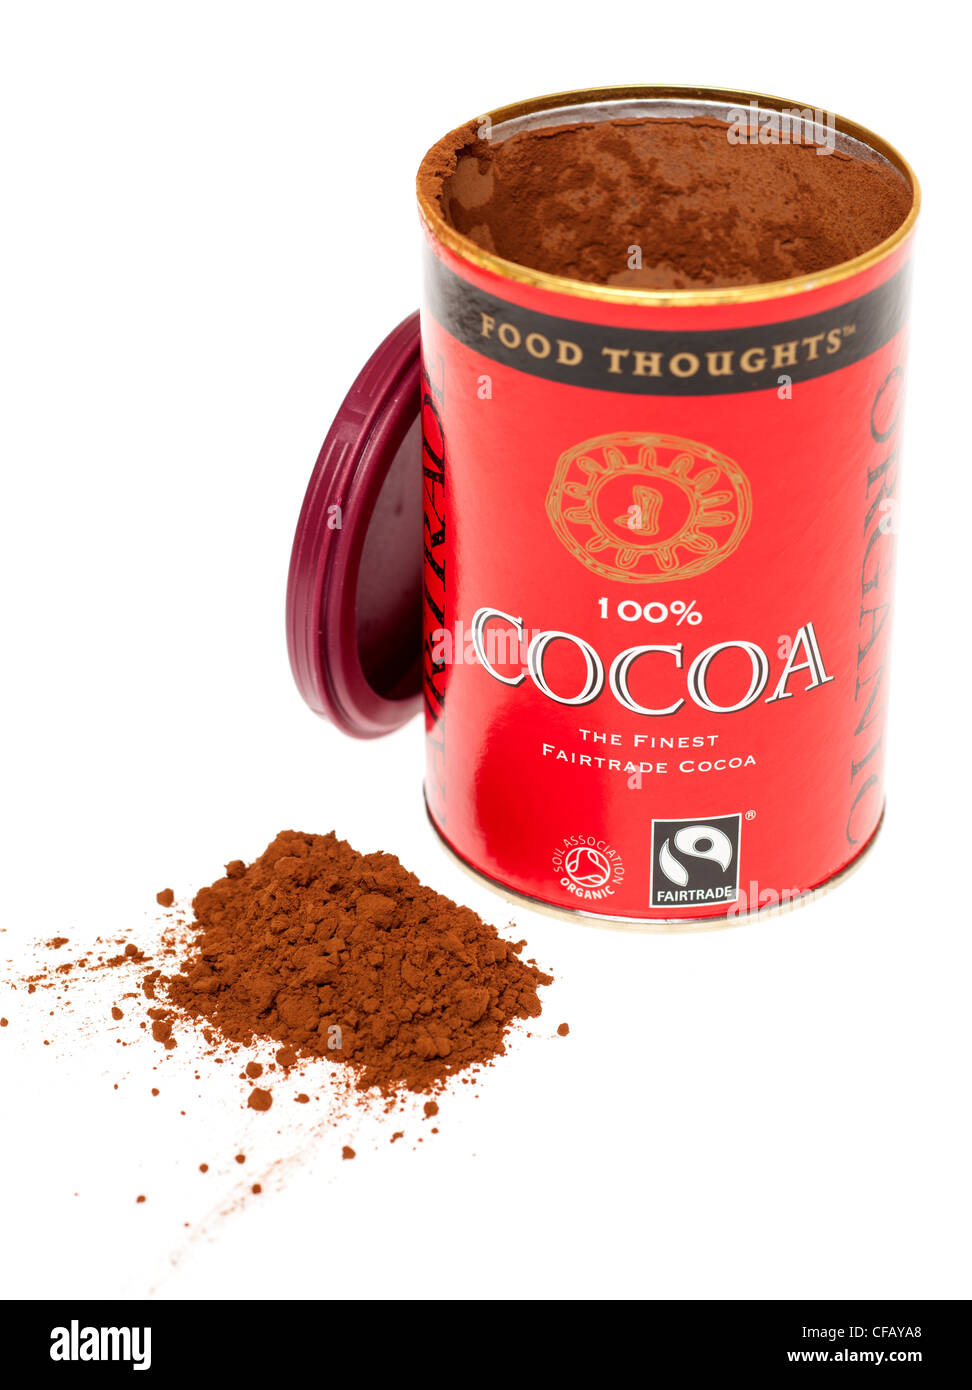 Carton of Fairtrade 100 percent Cocoa powder Stock Photo